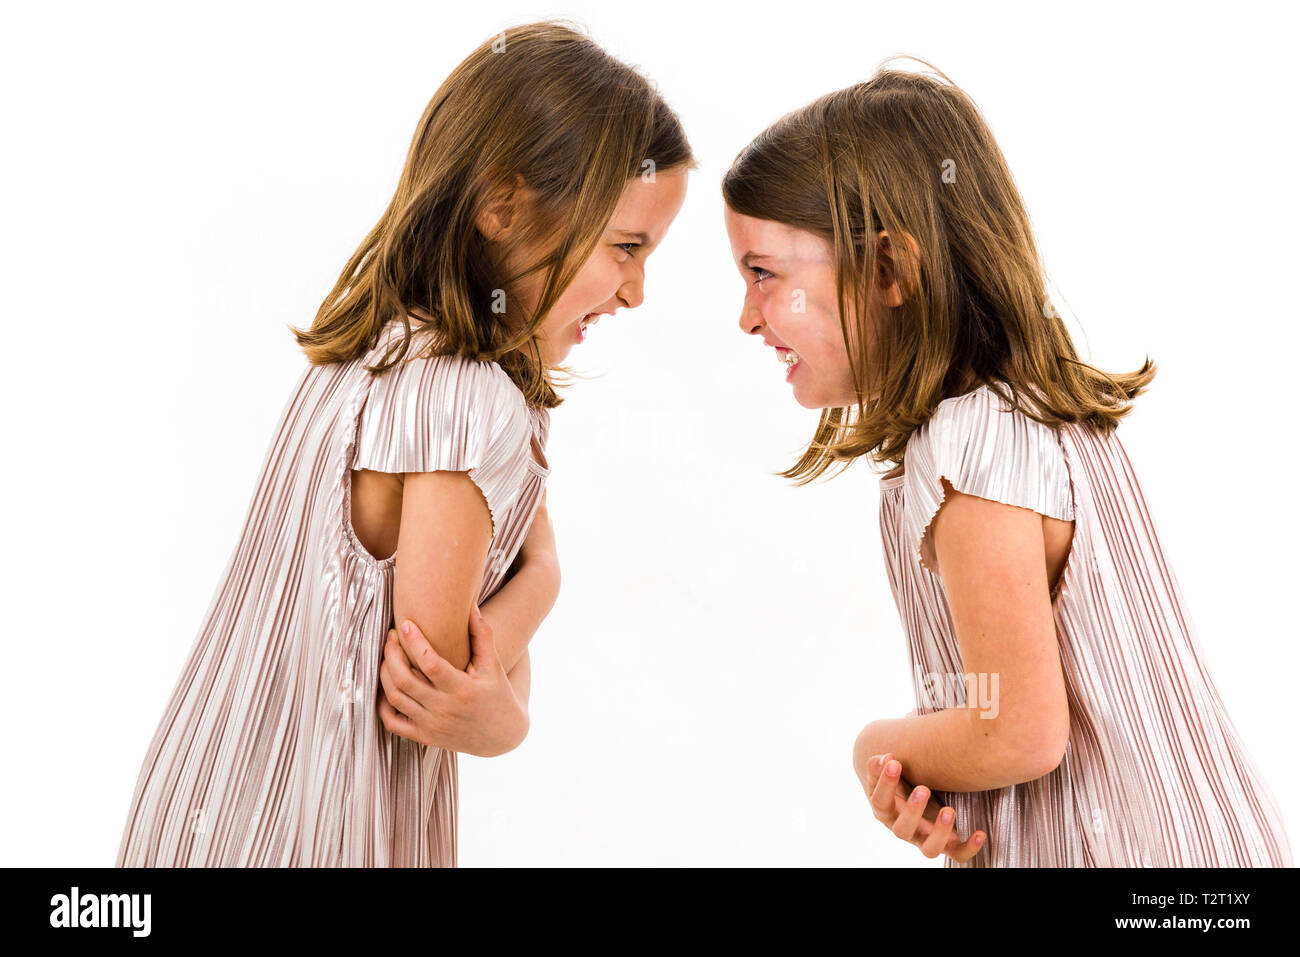 Identische Zwillinge Schwestern streiten sich gegenseitig zu beschimpfen. Böse Mädchen schreien, kreischen und argumentieren mit den emotionalen Ausdruck auf den Gesichtern. Fron Stockfoto